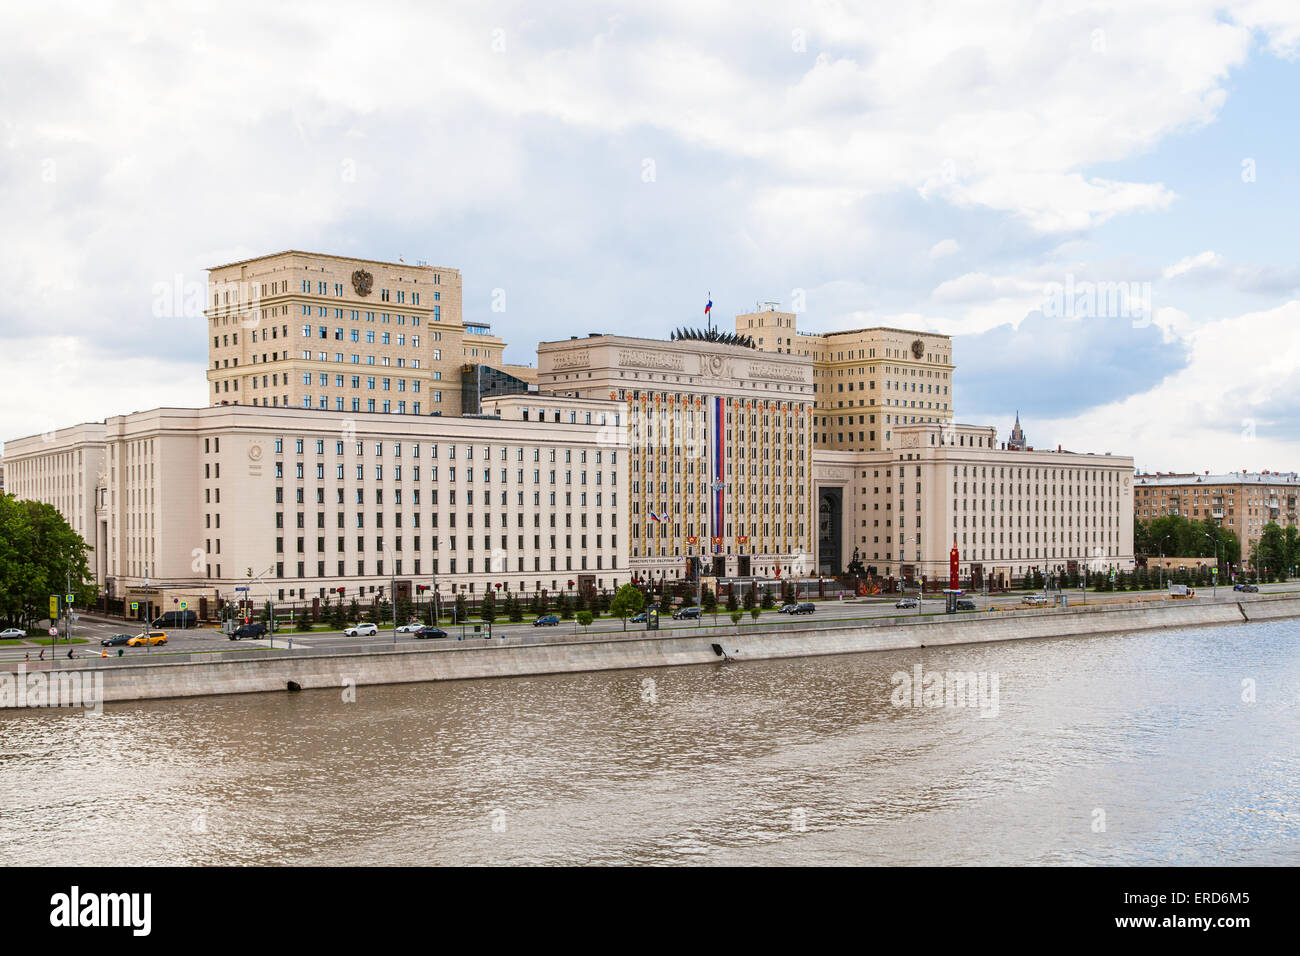 Moscou, Russie - 30 MAI 2015 : l'administration centrale du ministère de la défense de la Russie sur le remblai Frunzenskaya à Moscou, Russie Banque D'Images